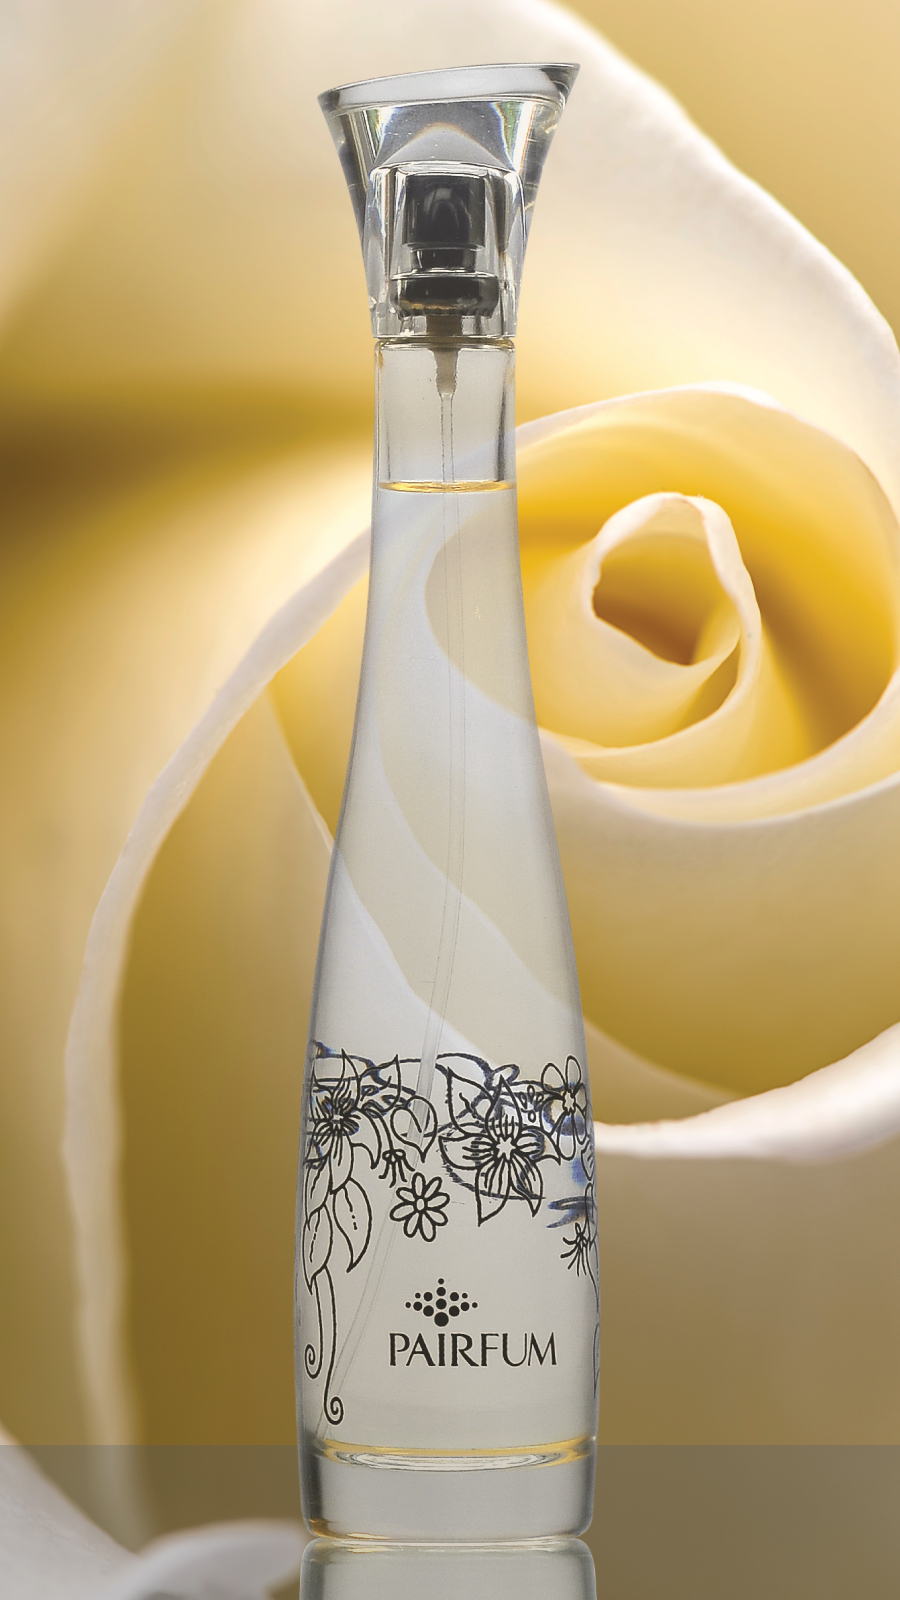 Flacon Room Fragrance Spray Rose White Flower 9 16